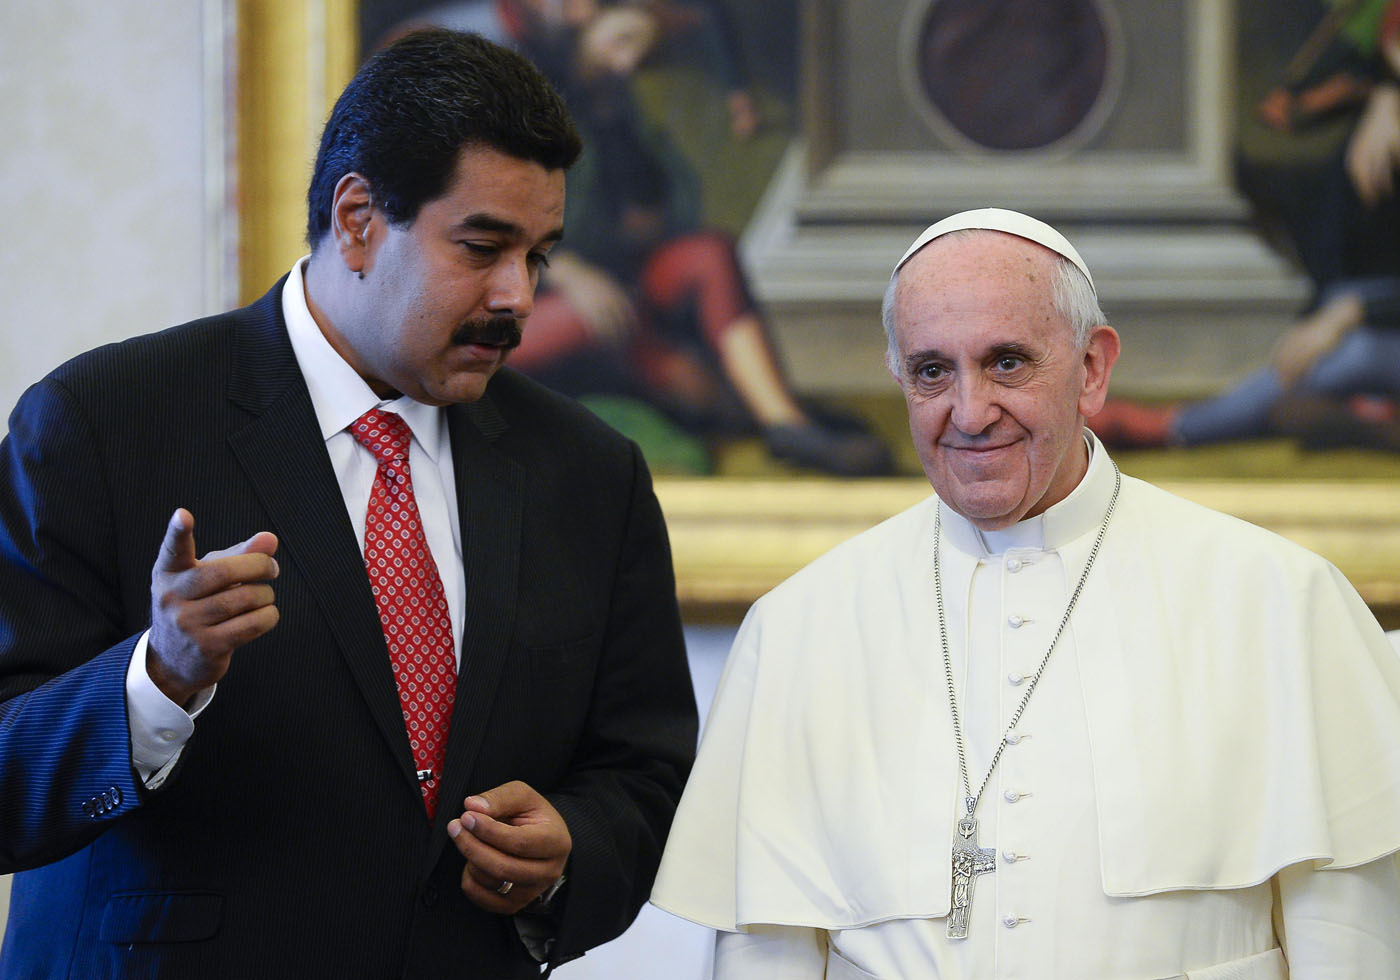 El diario del Vaticano reseño “la violencia que desencadenó el régimen” de Maduro en Venezuela